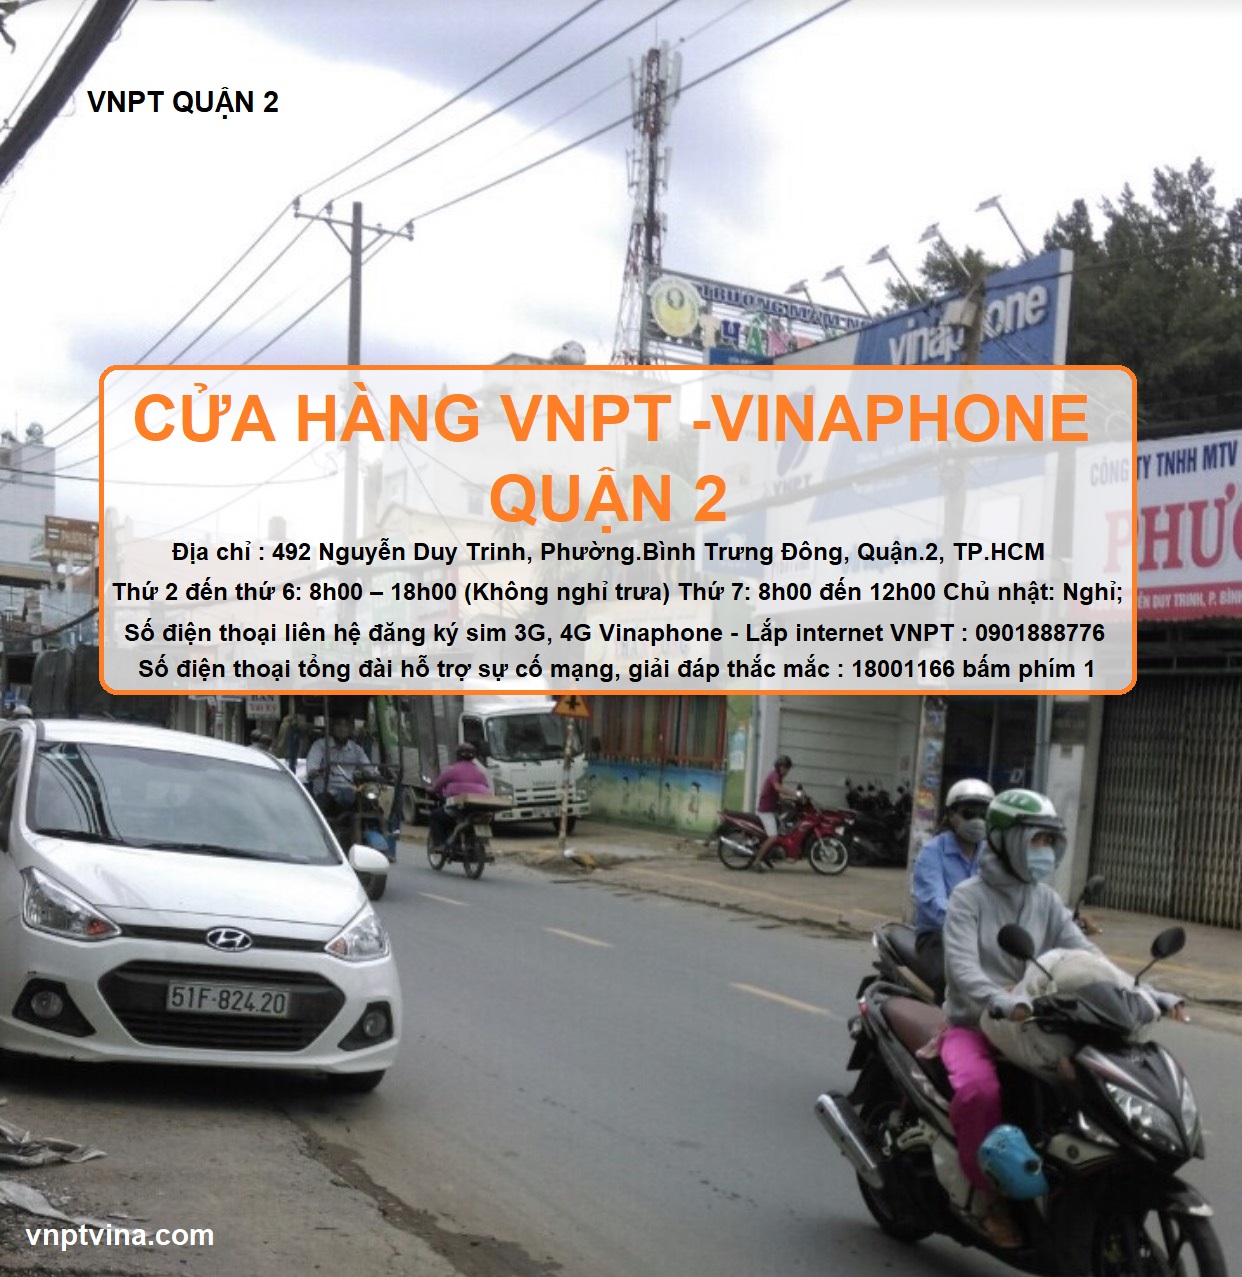 cửa hàng VNPT quận 2 - 492 Nguyễn Duy Trinh, Phường.Bình Trưng Đông, Quận.2,TPHCM